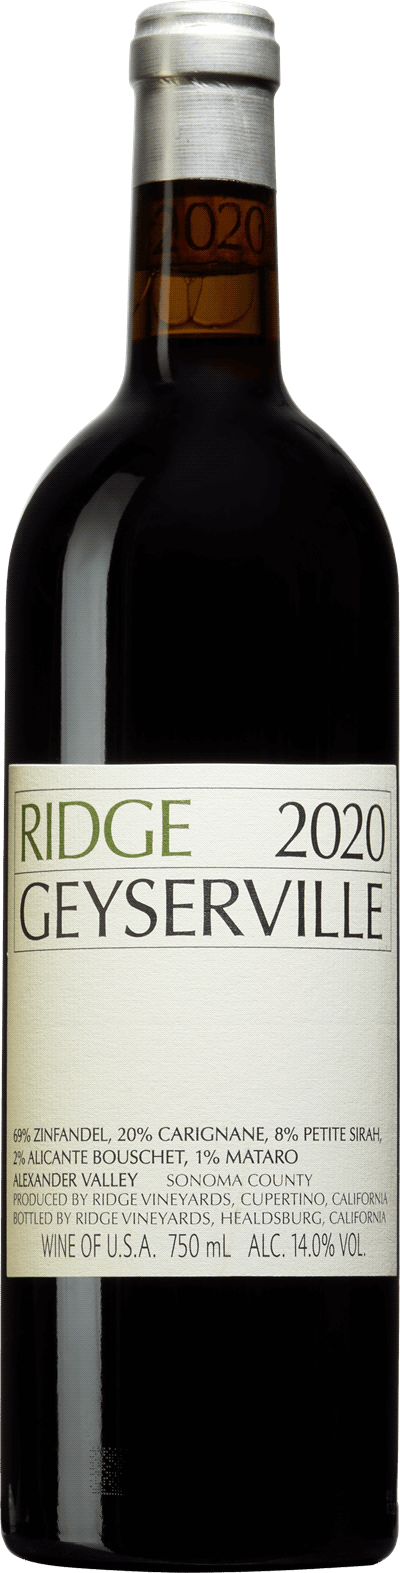 Ridge Geyserville, 2020